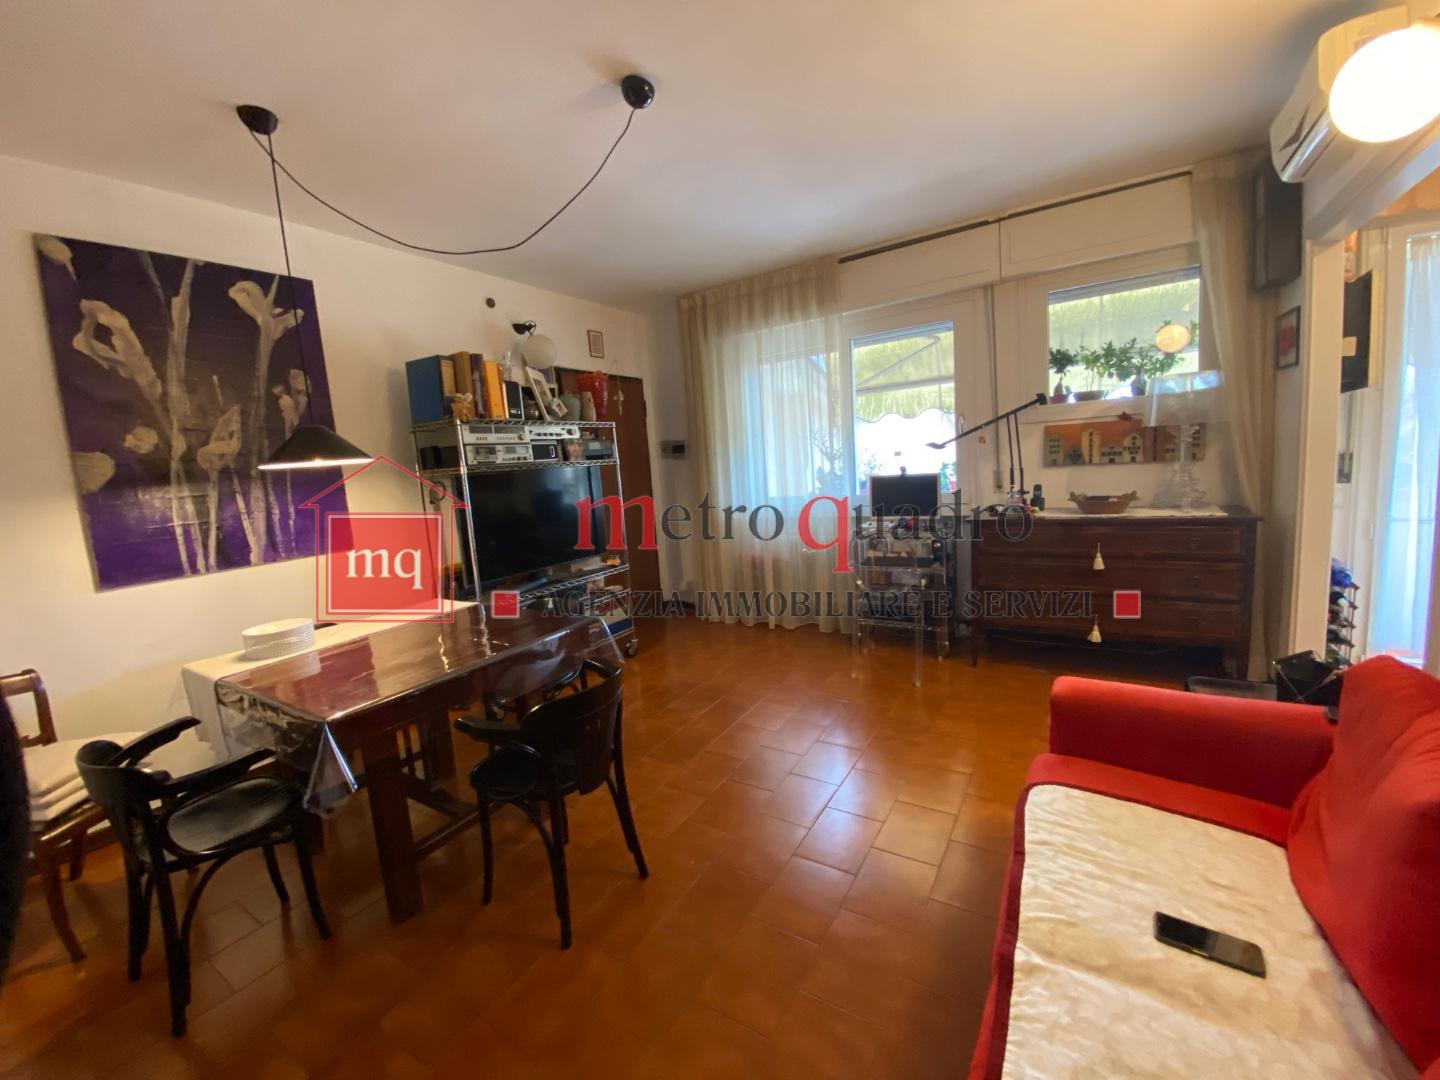 Appartamento in vendita a Vecchiano, 4 locali, prezzo € 170.000 | PortaleAgenzieImmobiliari.it